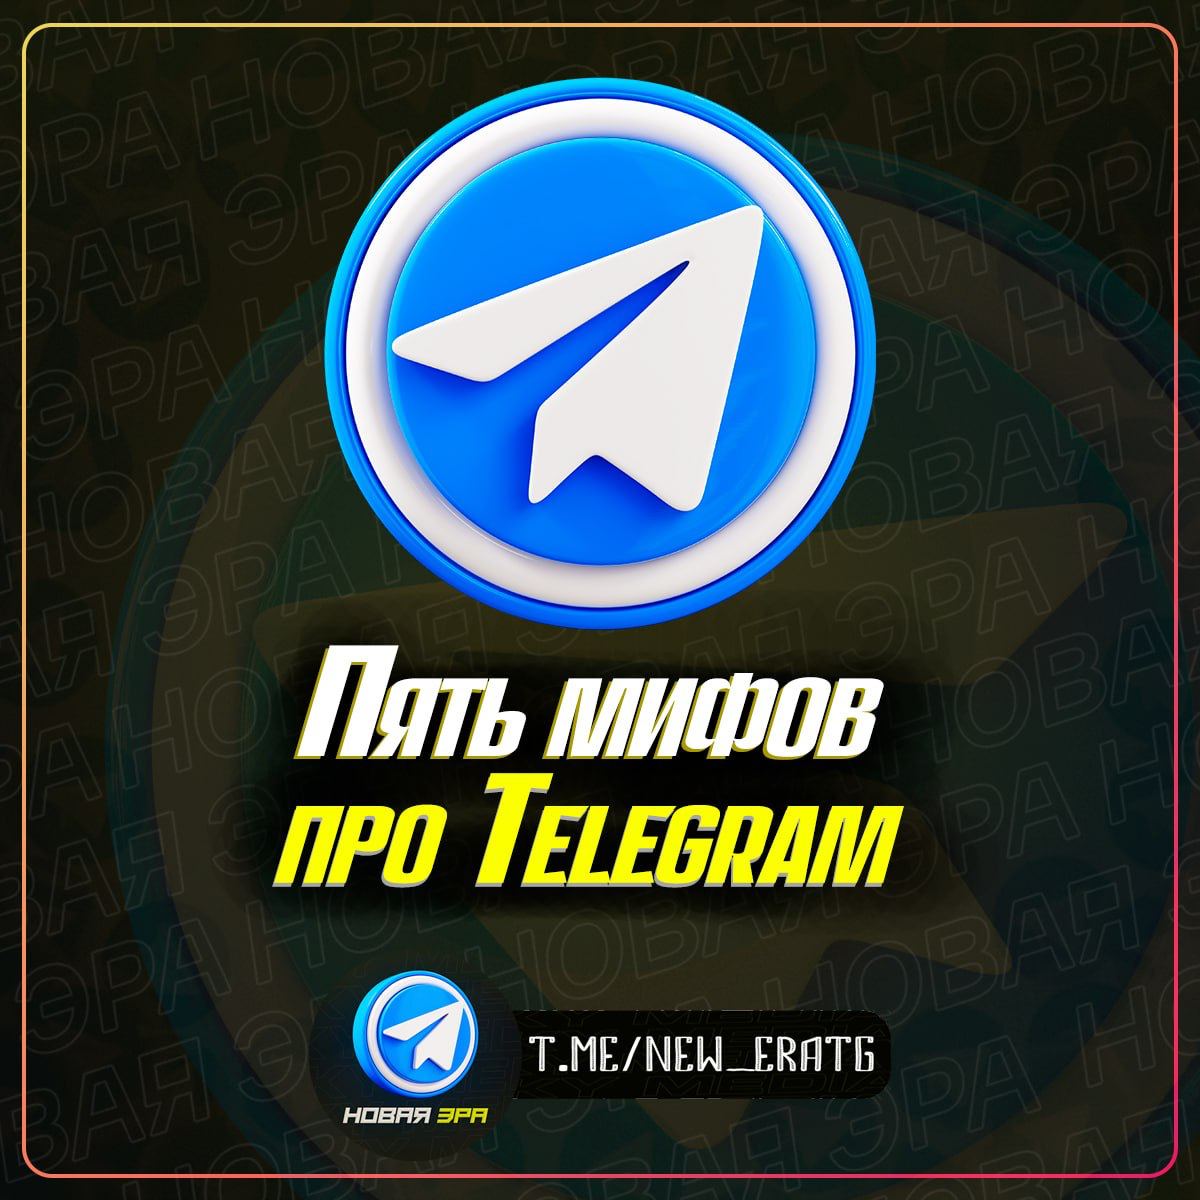 Телеграмм новая версия для андроид на русском языке скачать бесплатно на телефон фото 60